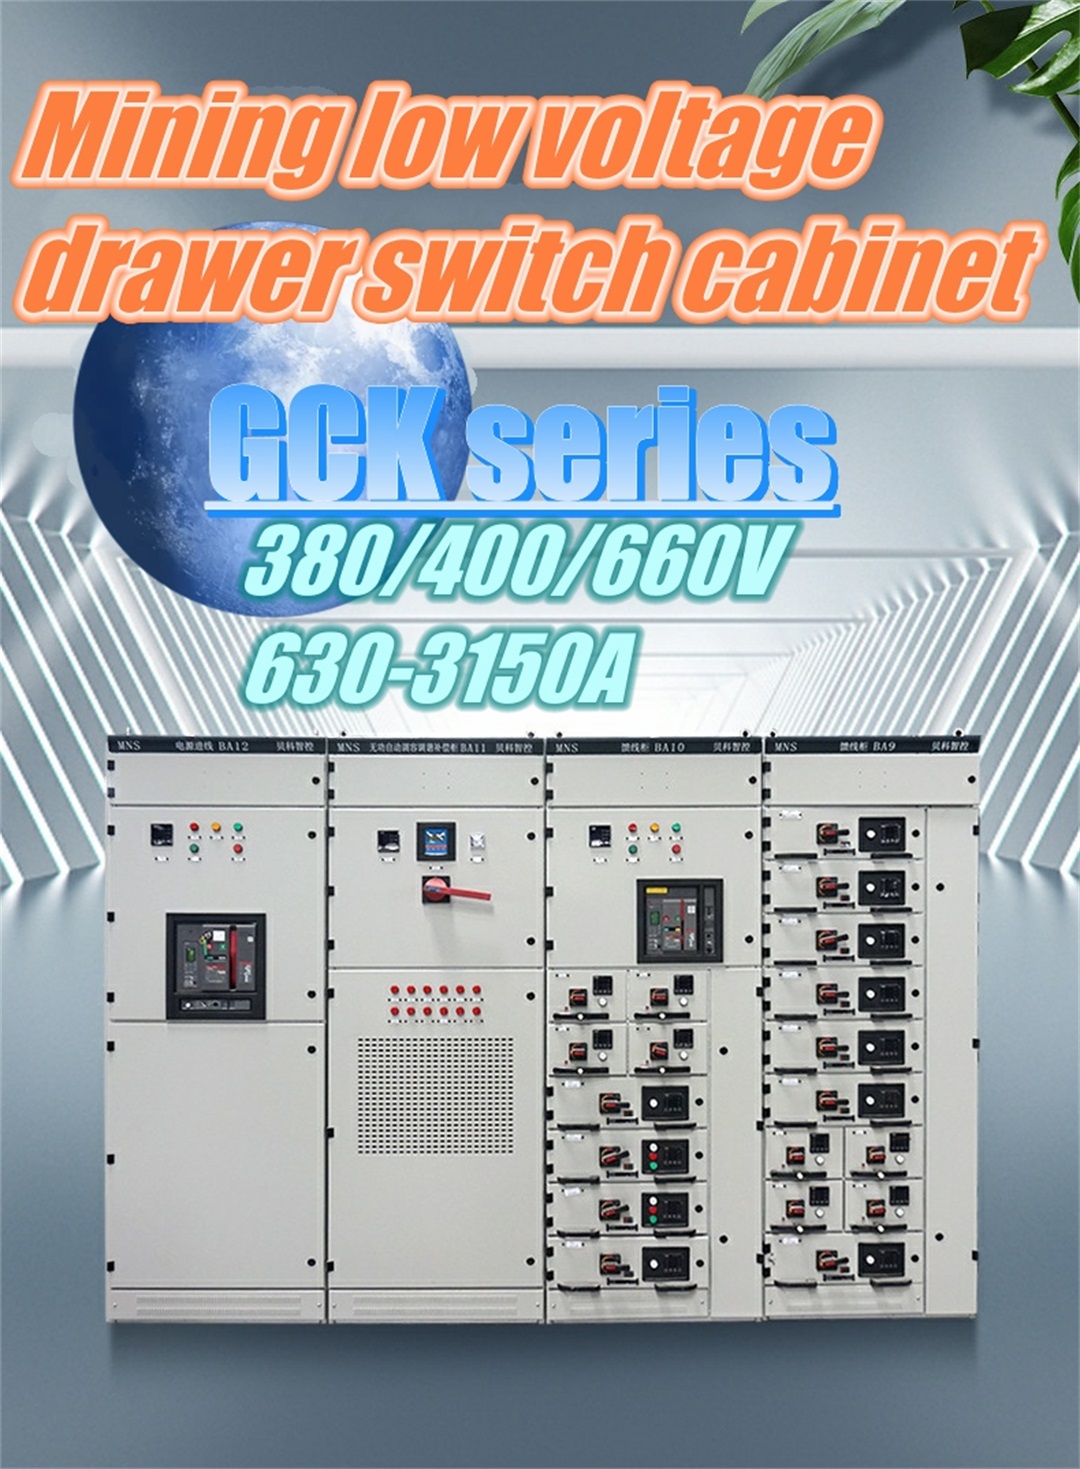 Low voltage draw out switch kabinet foar mynbou